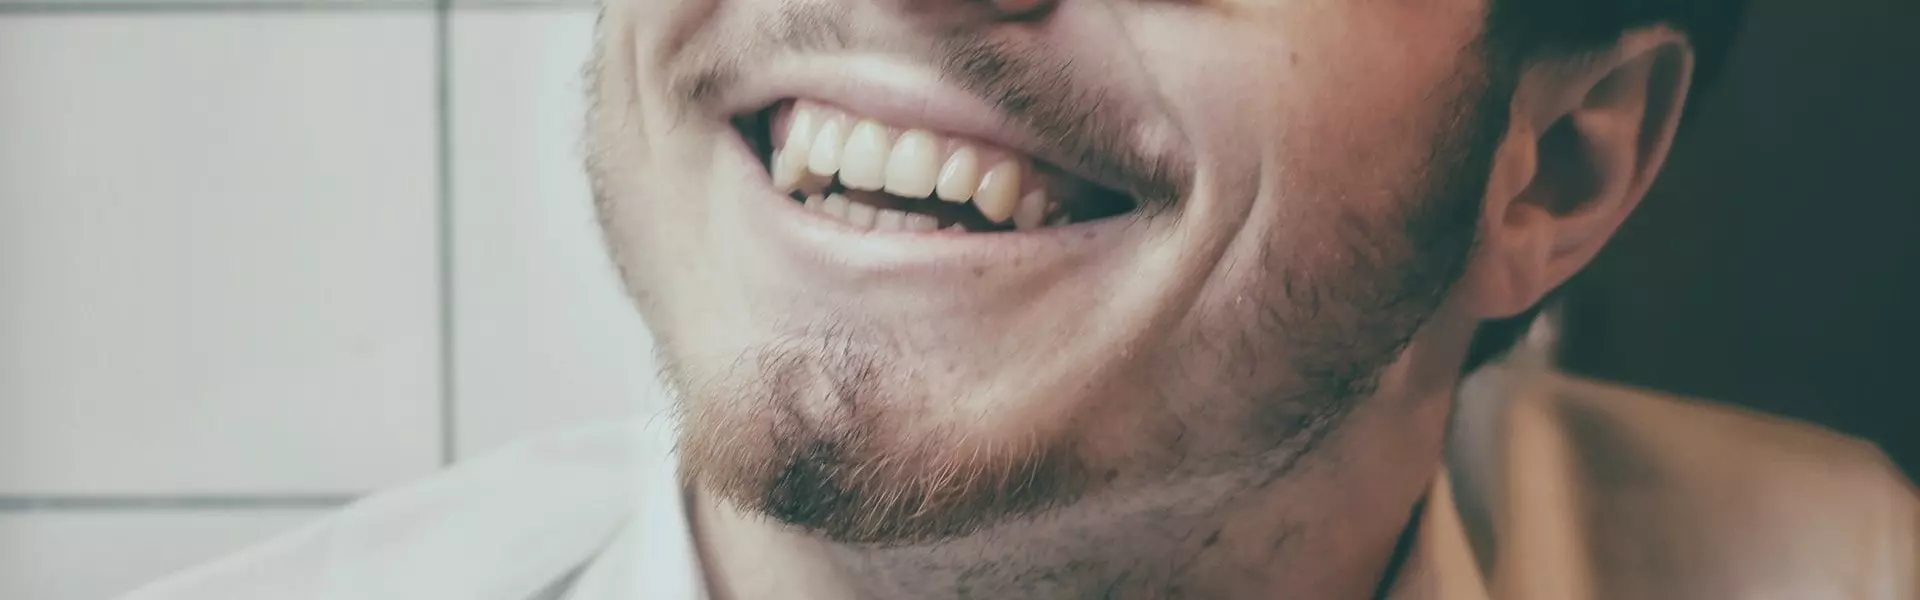 Зубы как показатель социального статуса